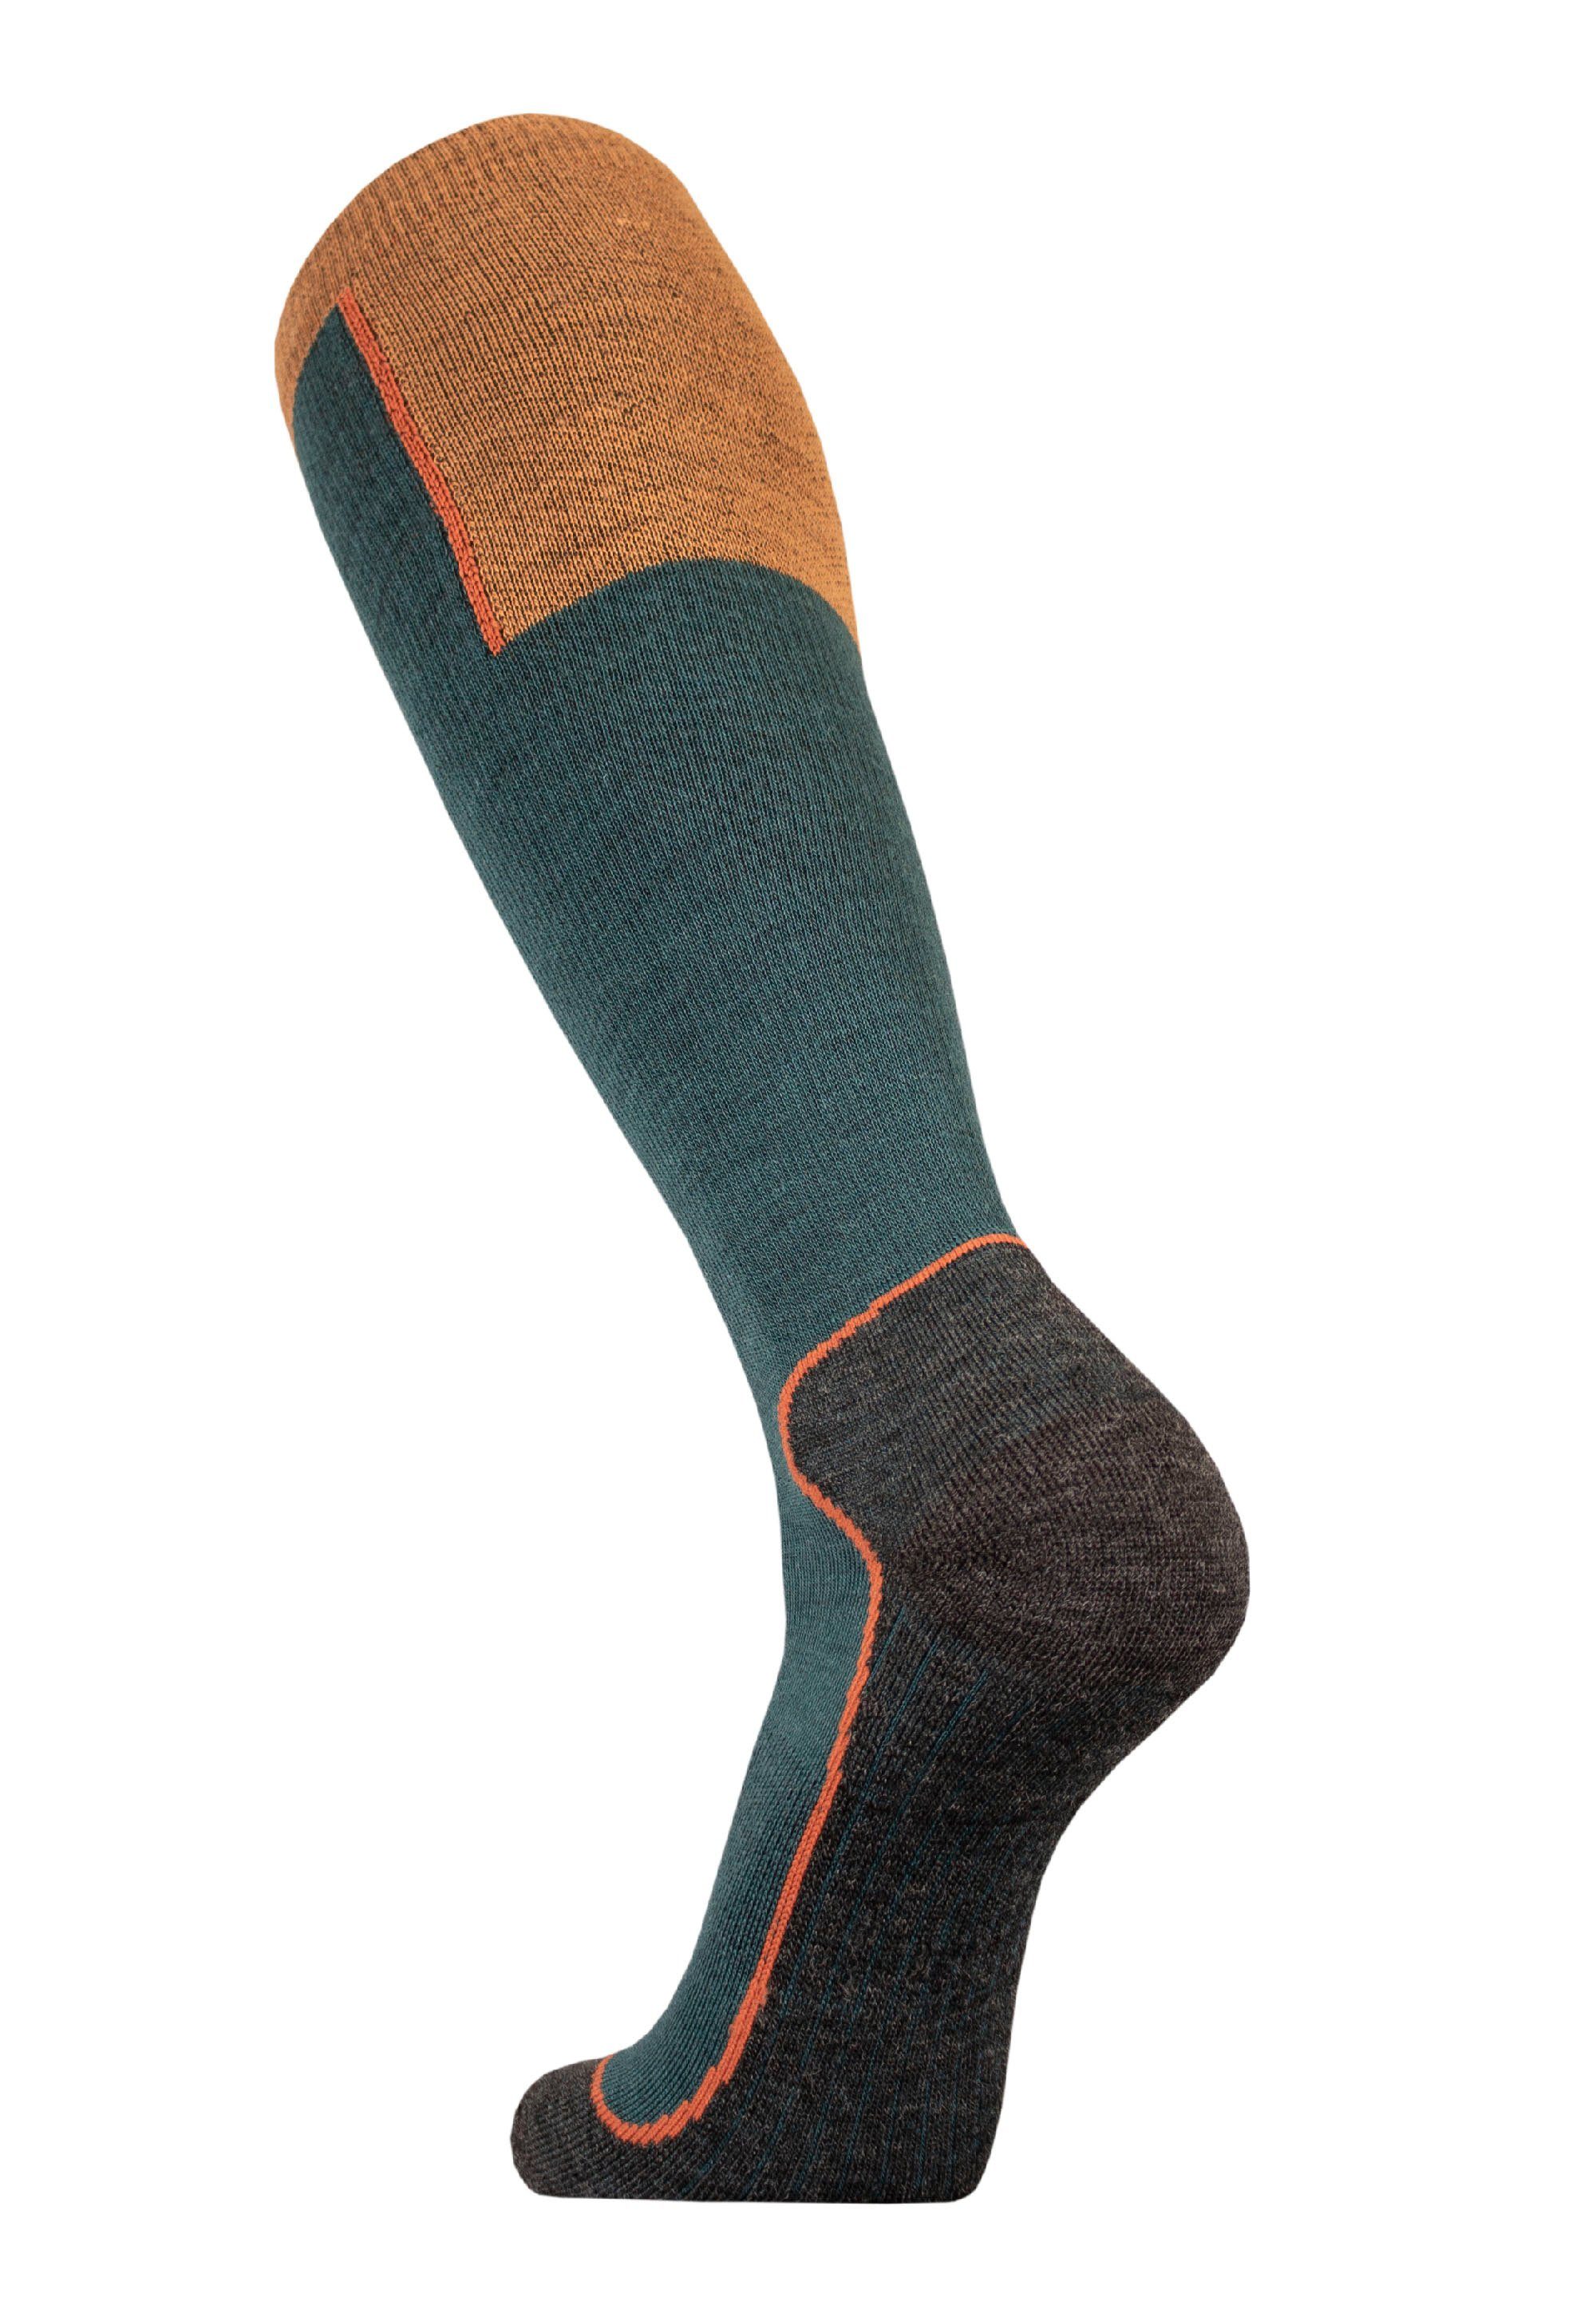 UphillSport Socken OUNA mit grün-orange mehrlagiger (1-Paar) Struktur